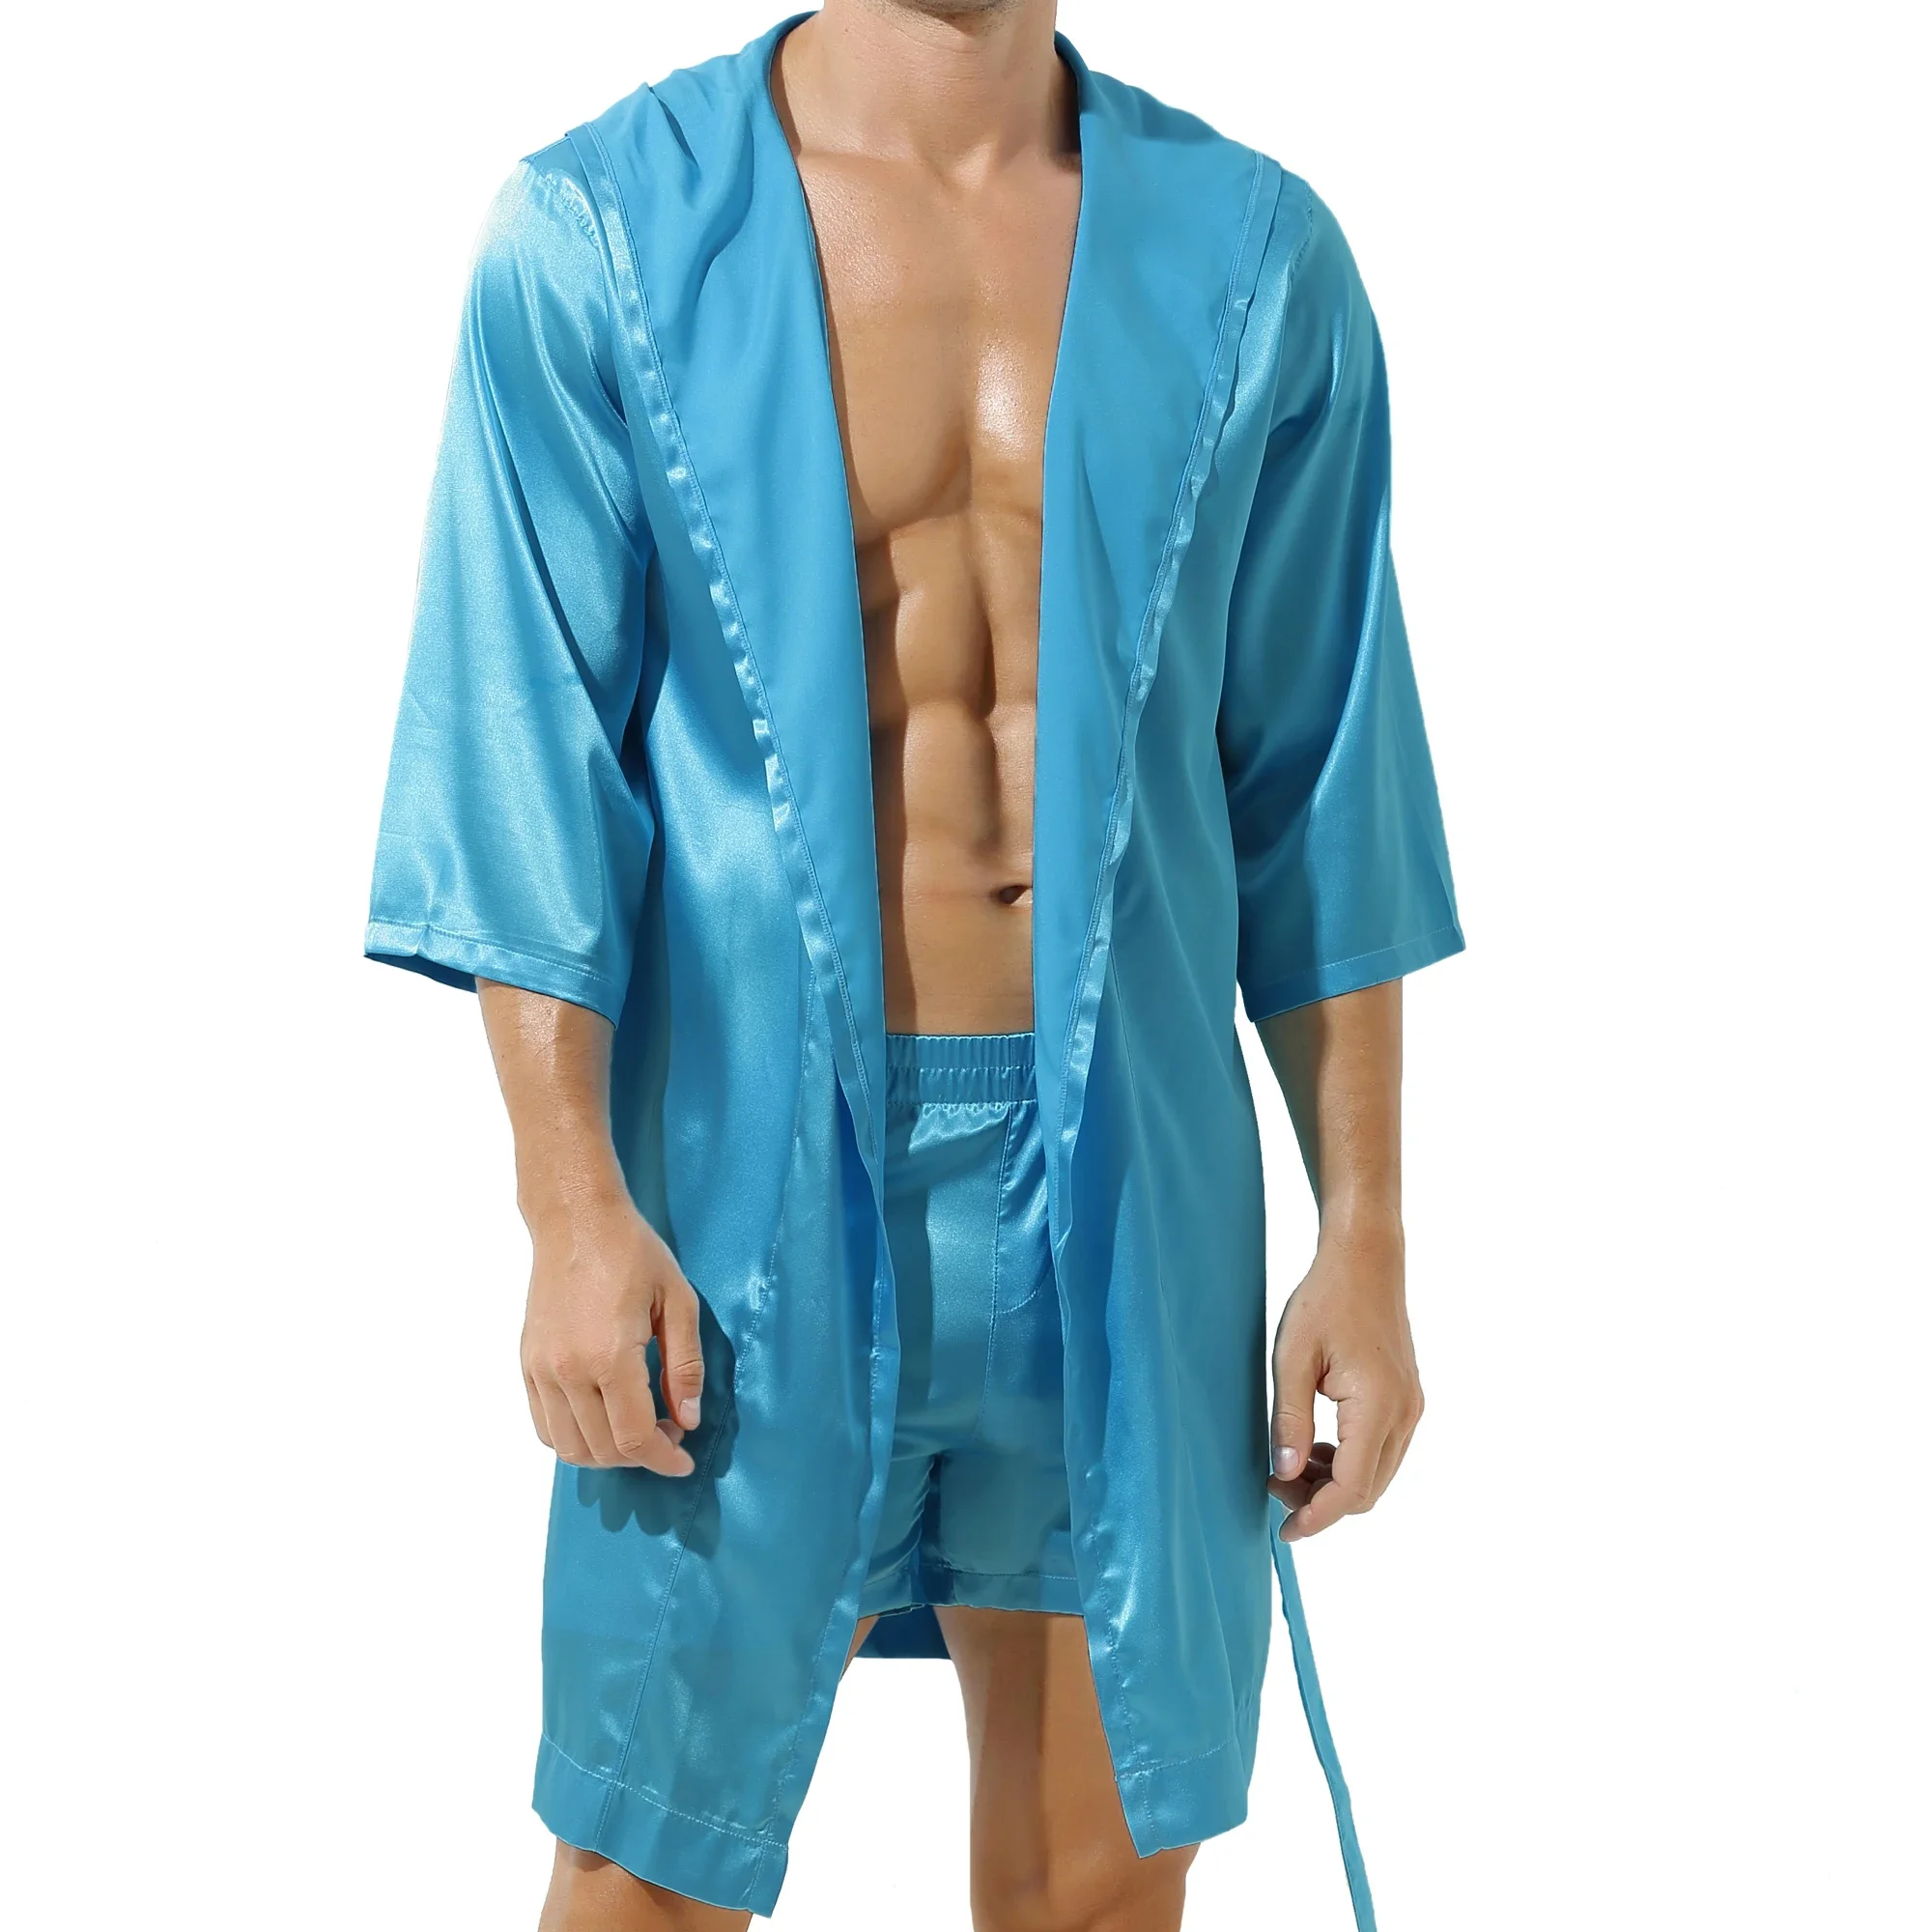 Erkekler ipek leke kimono bornoz bornoz şort set pijama elbiseler seksi elbiseler saten bornoz giyinme elbise pijama ev robe gecelik